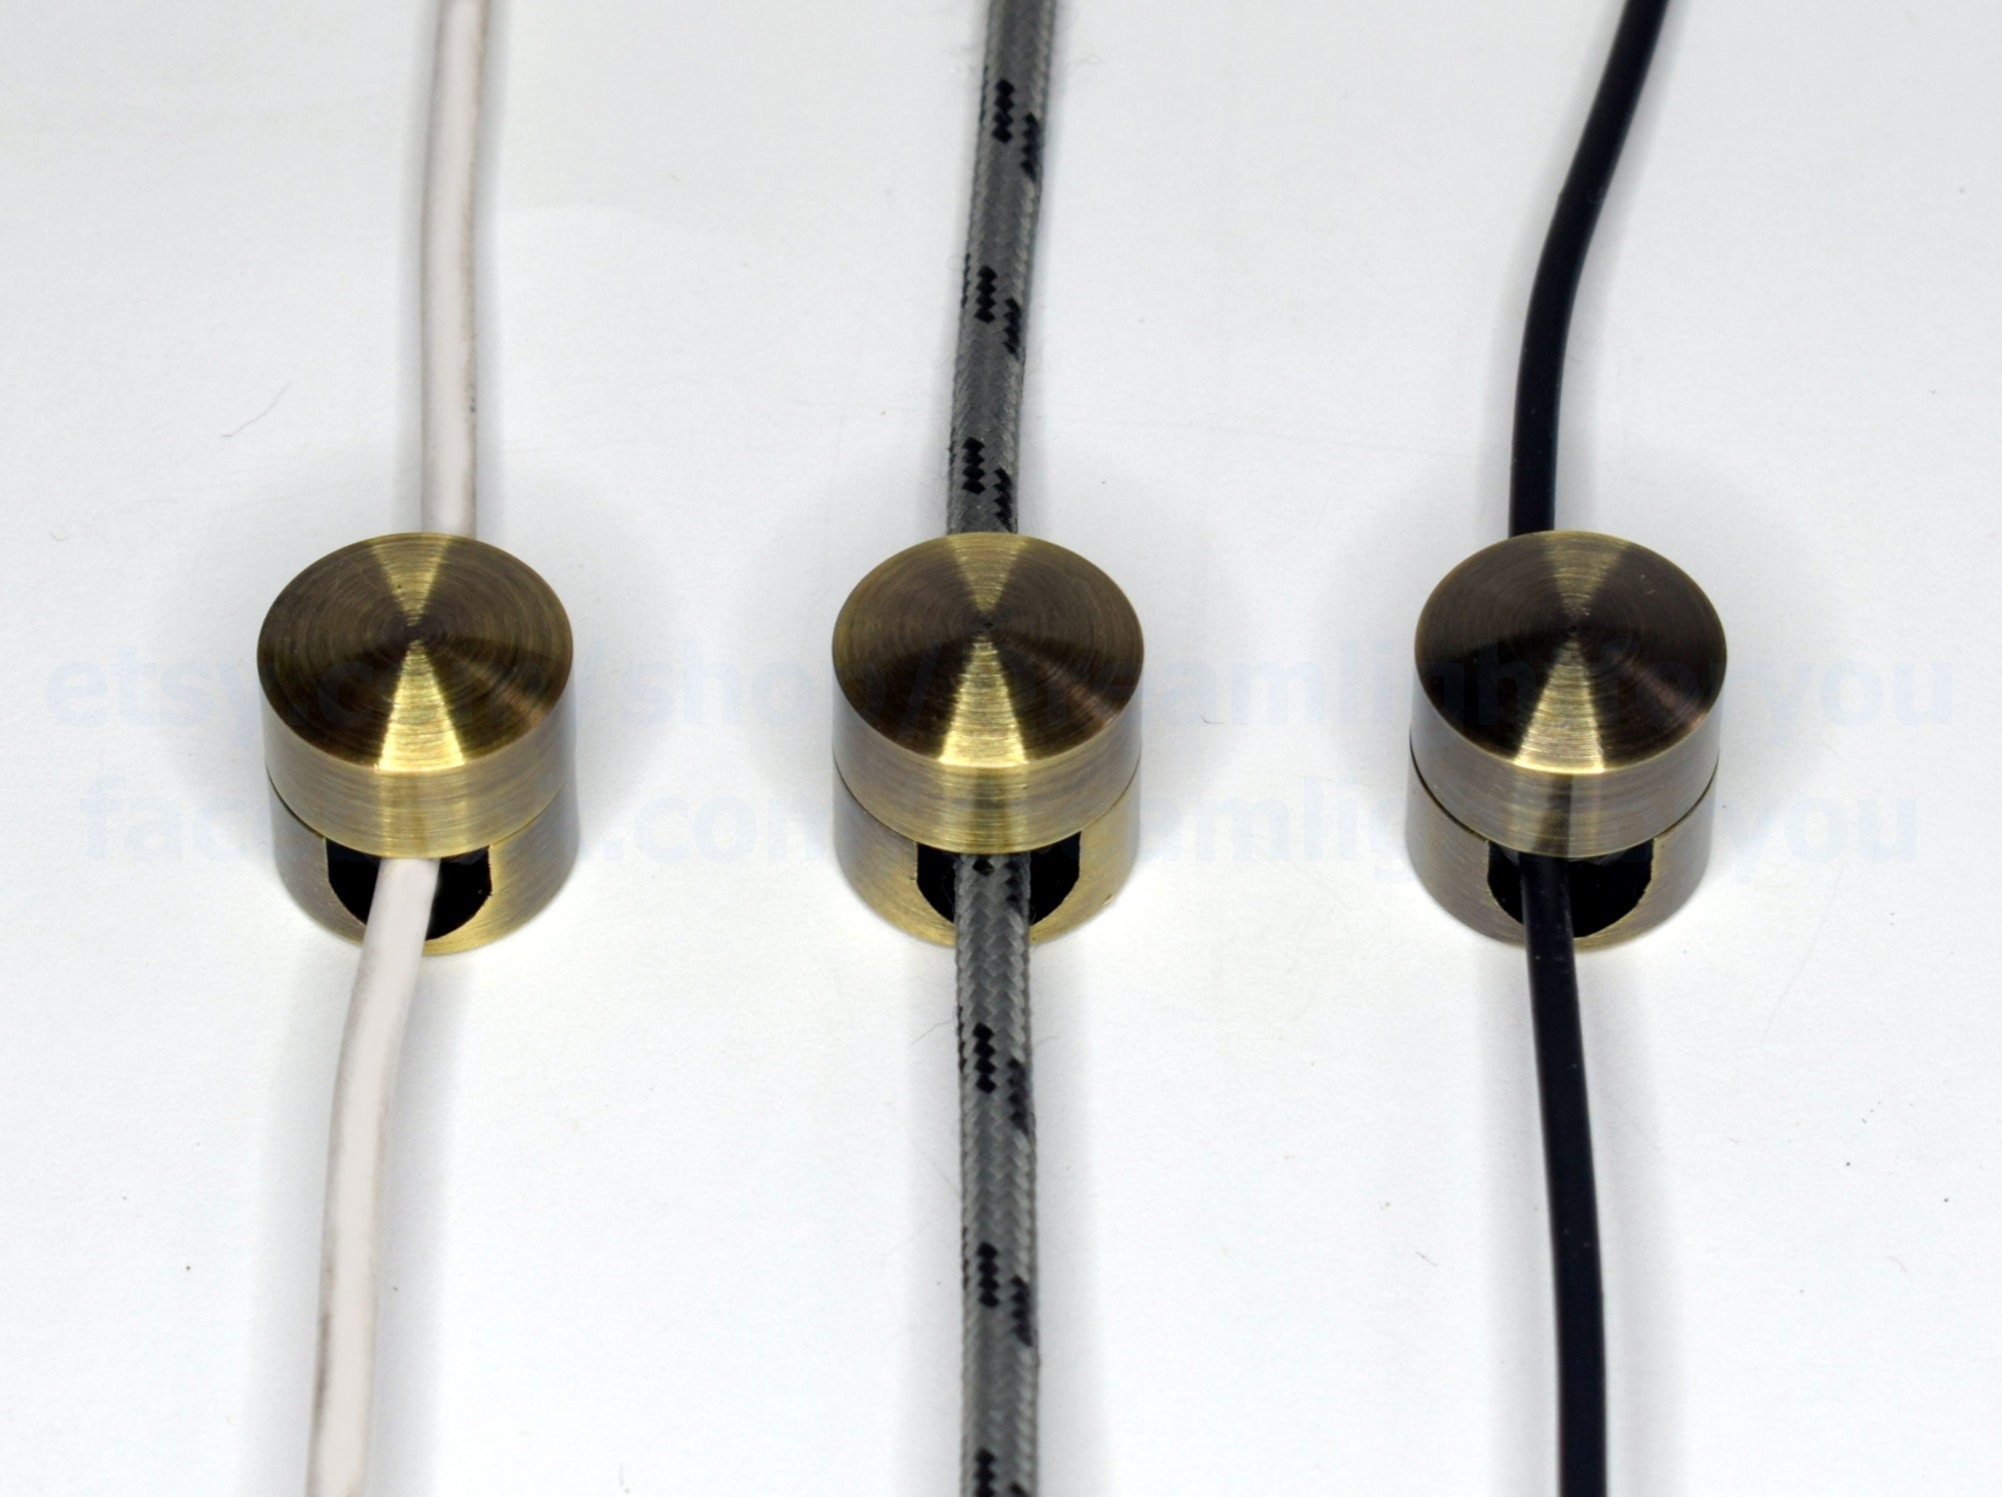 Clips de support de câble magnétique Organiseur de câble USB Clip de  gestion de câbles de bureau Support de cordon métallique (couleur : noir)